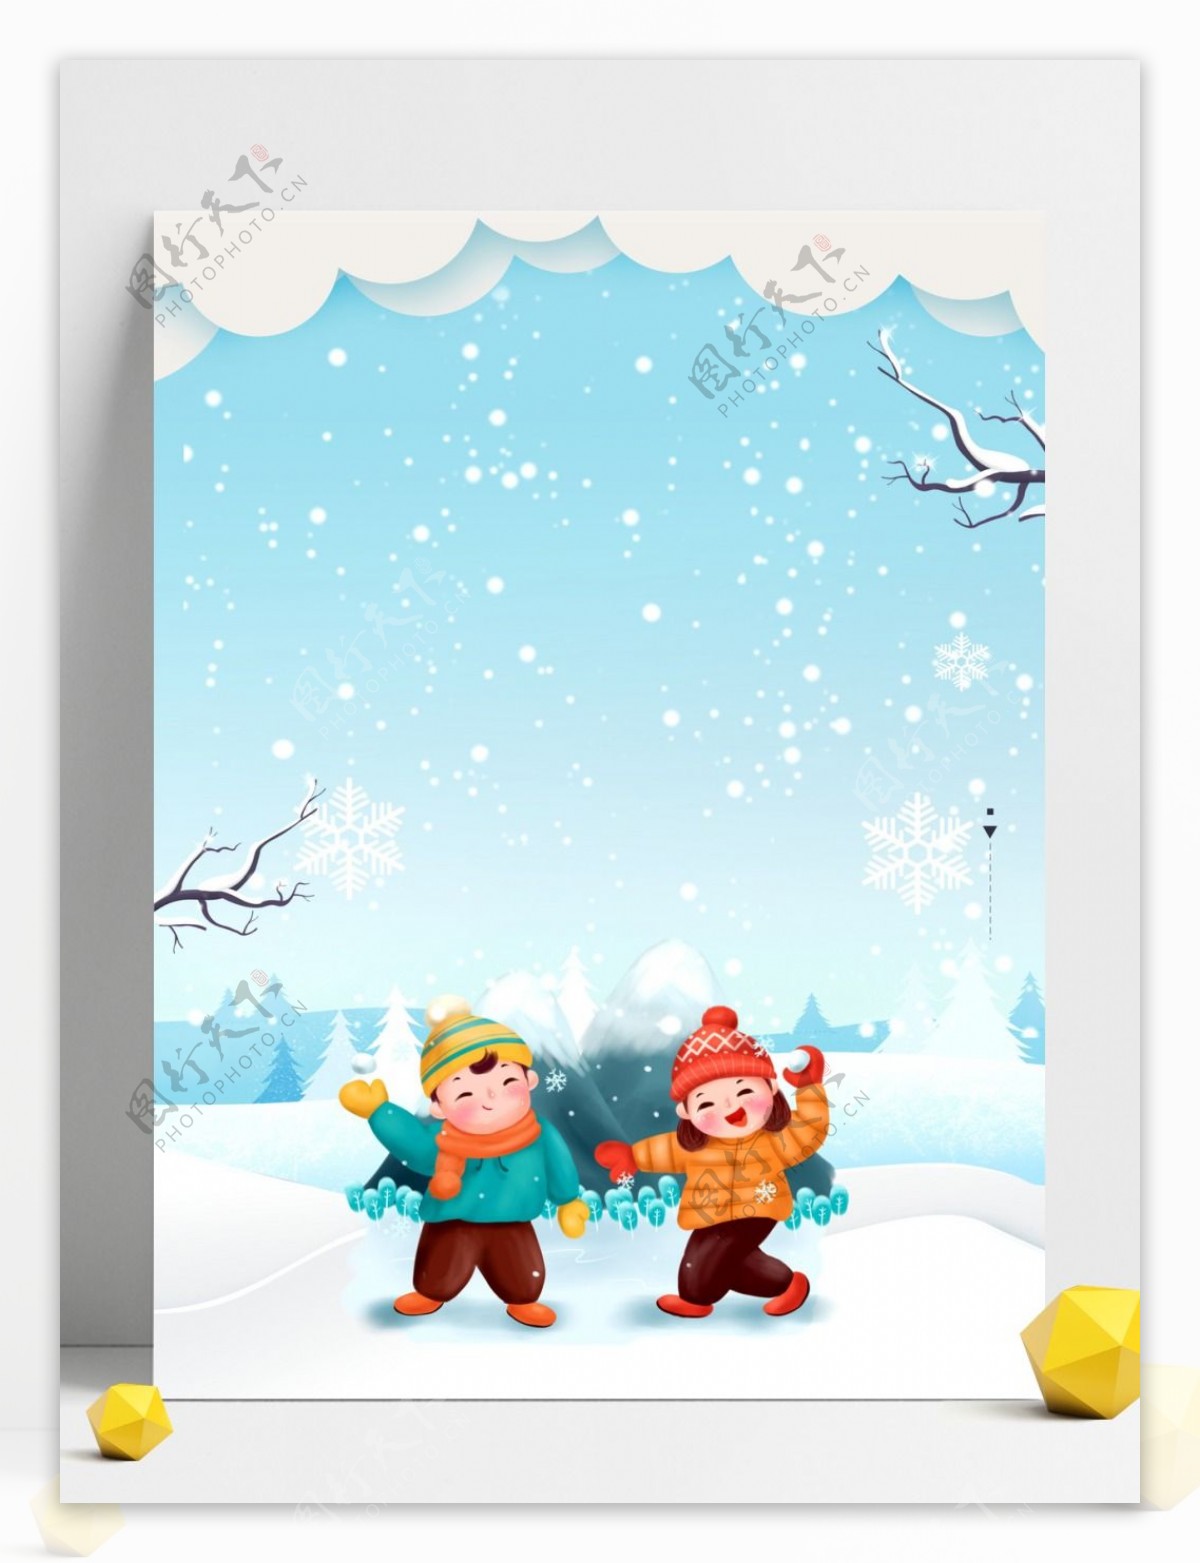 可爱卡通孩童玩雪冬至广告背景